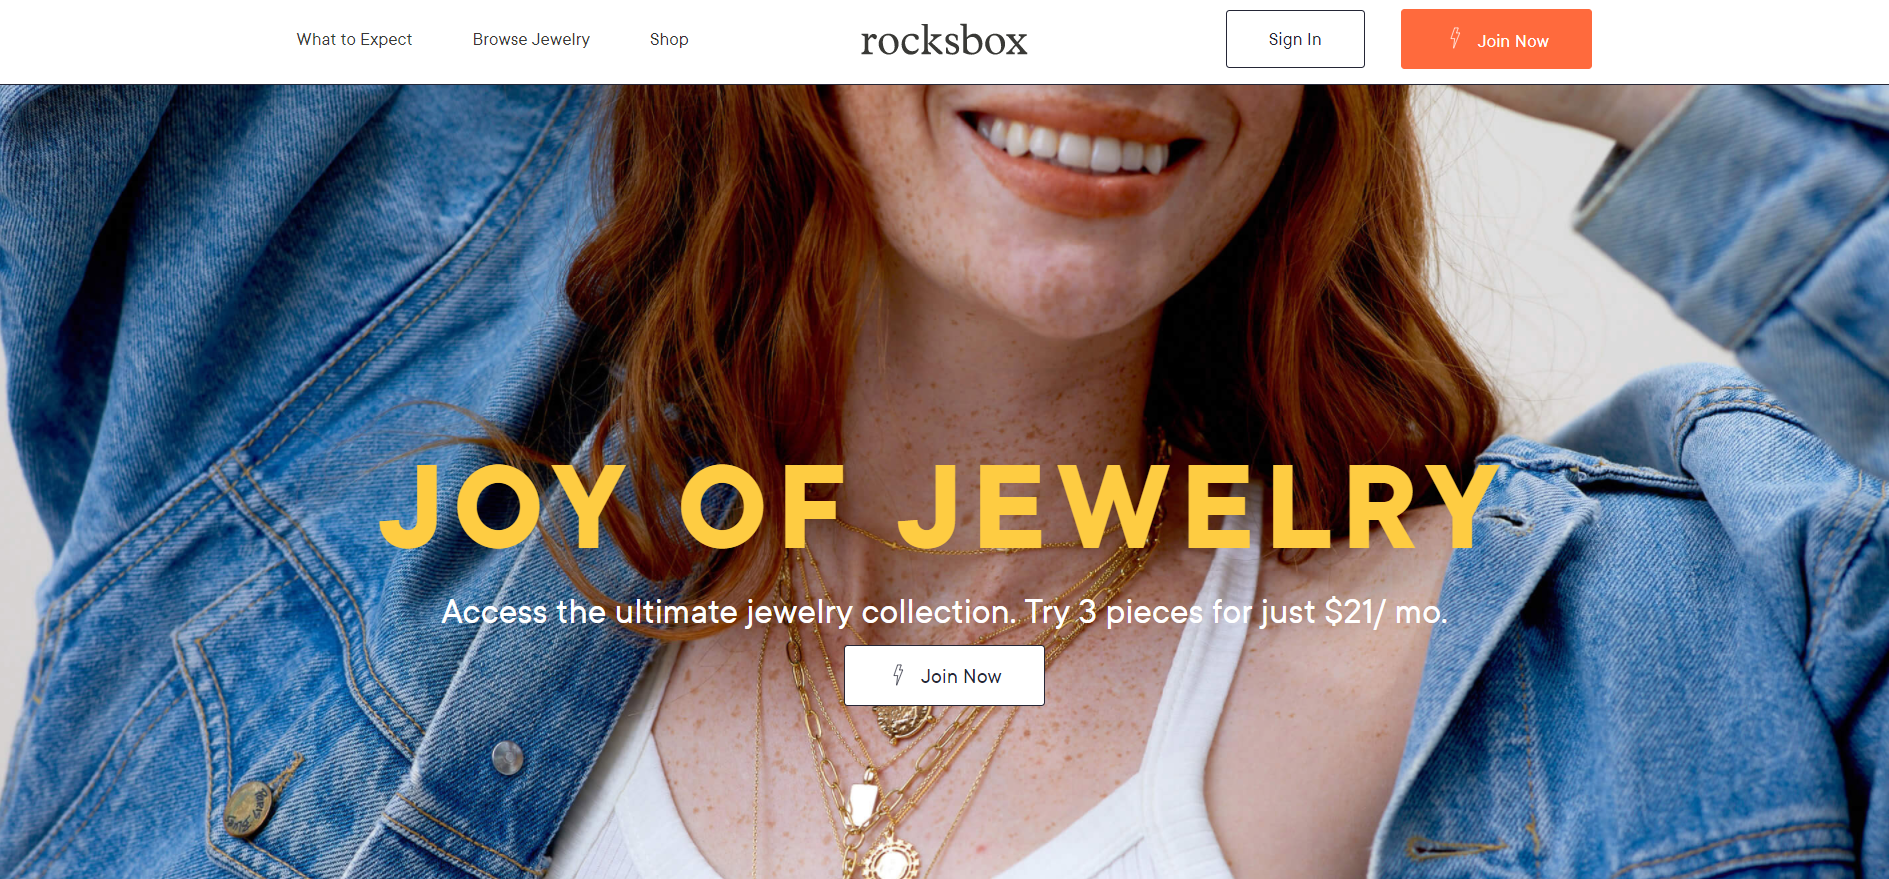 全球最大钻石珠宝零售商 Signet 收购旧金山订阅式珠宝电商 Rocksbox